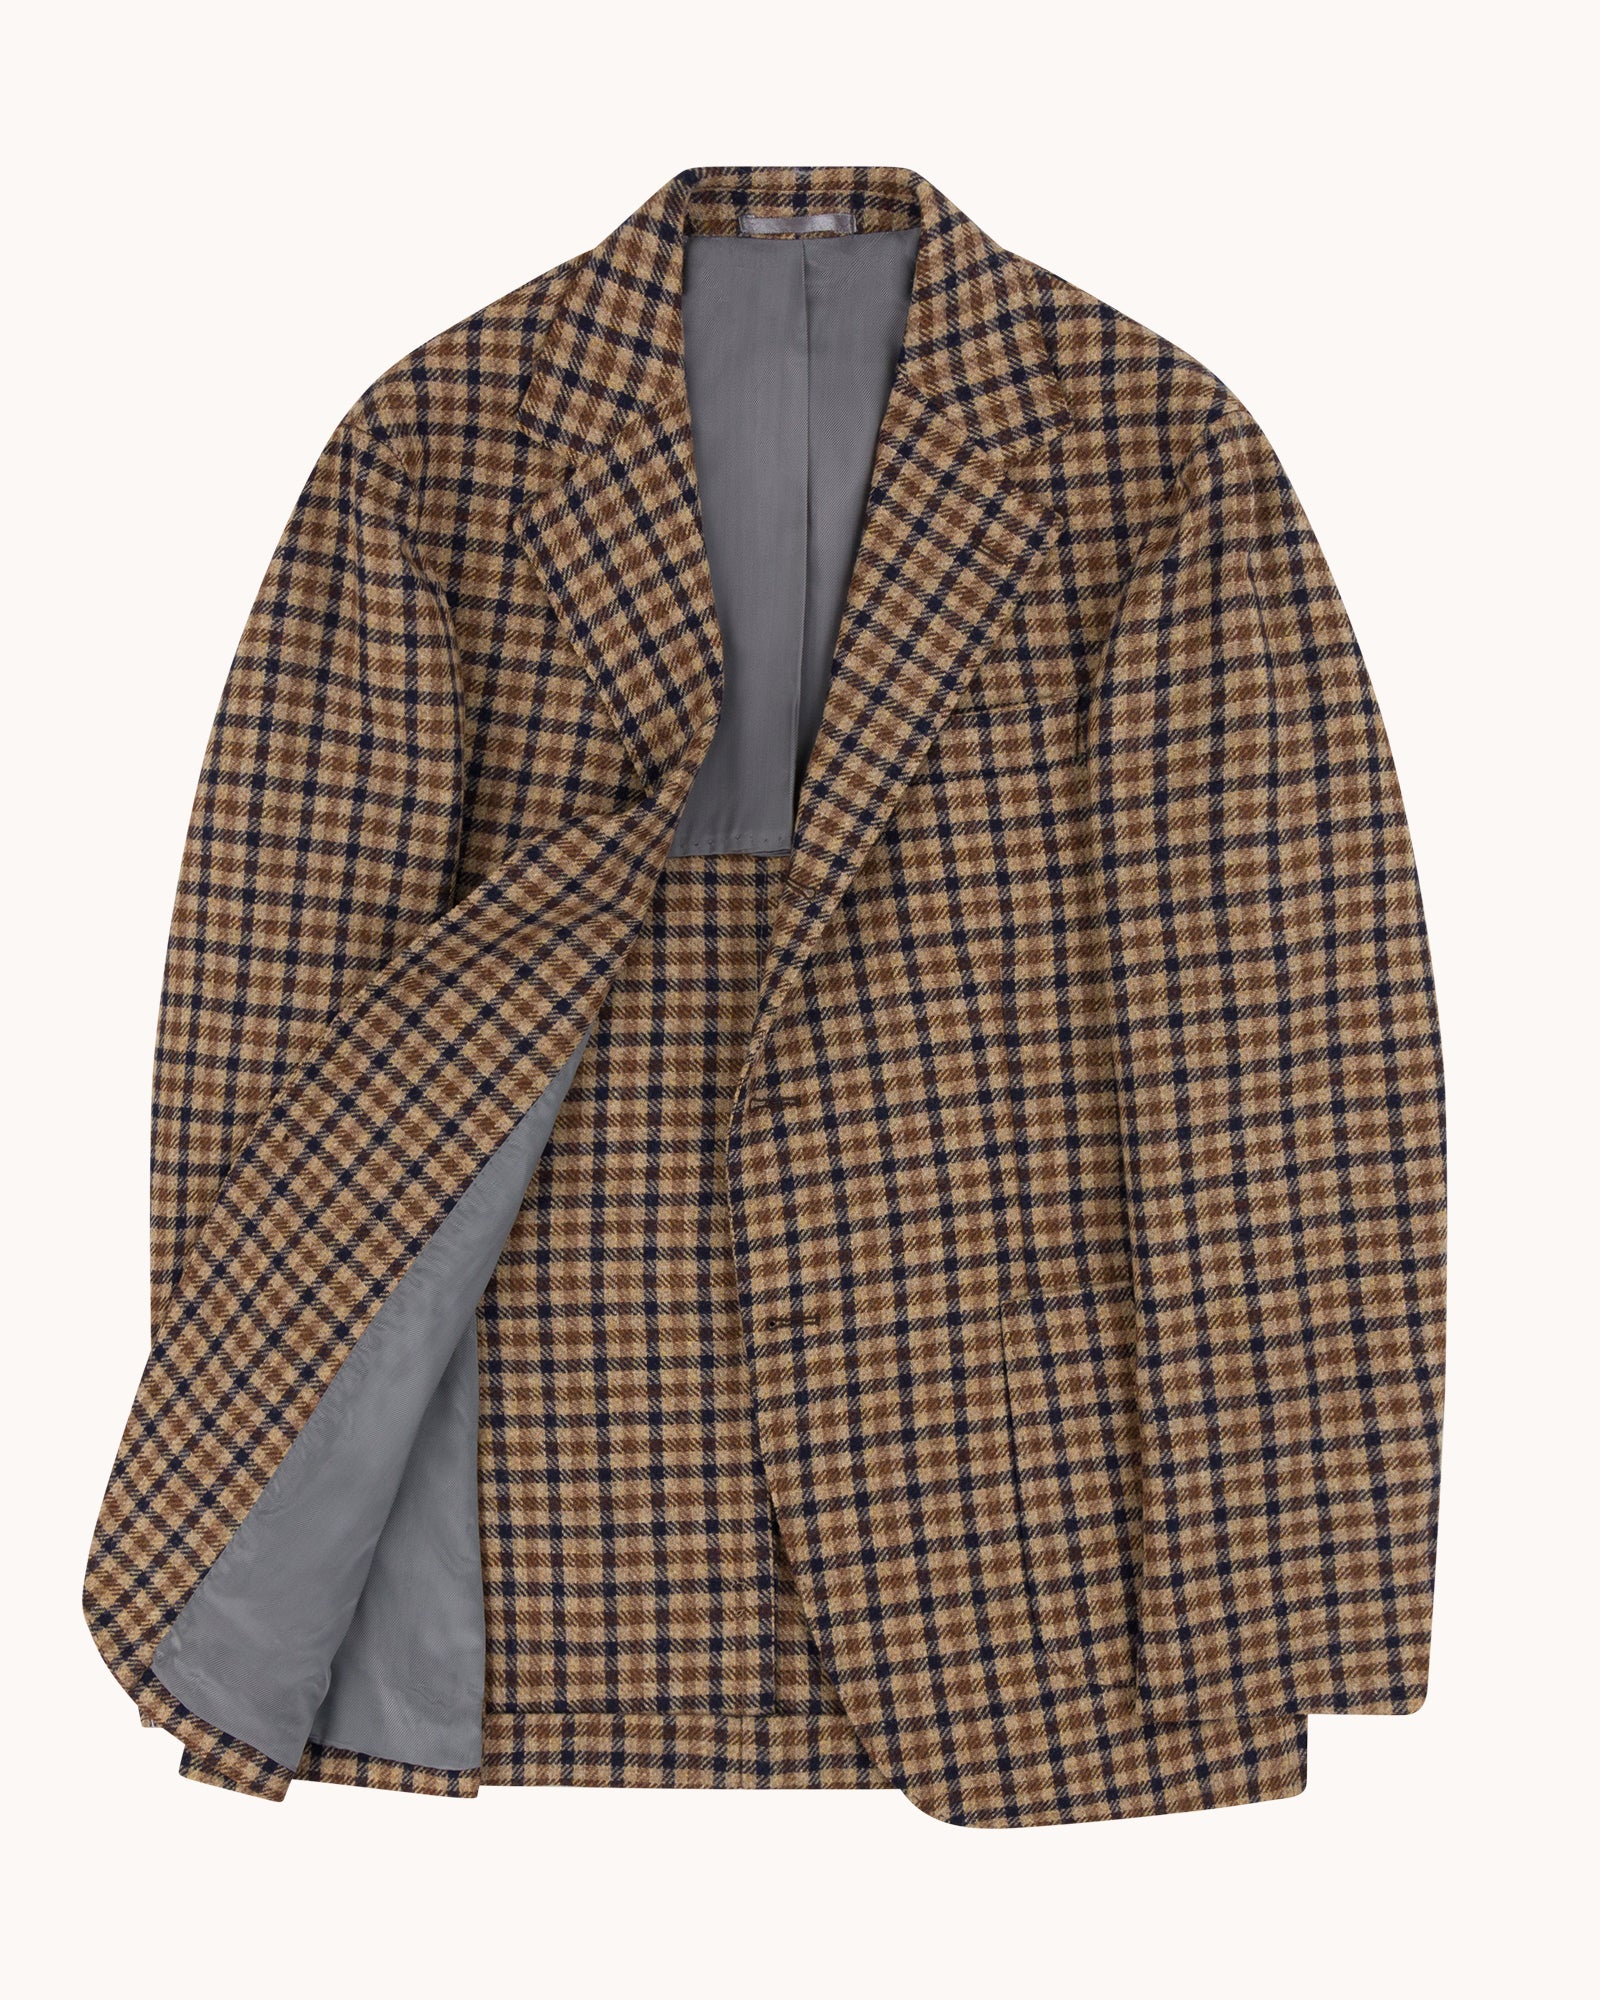 Sport Jacket - Beige Navy Check Wool Cashmere